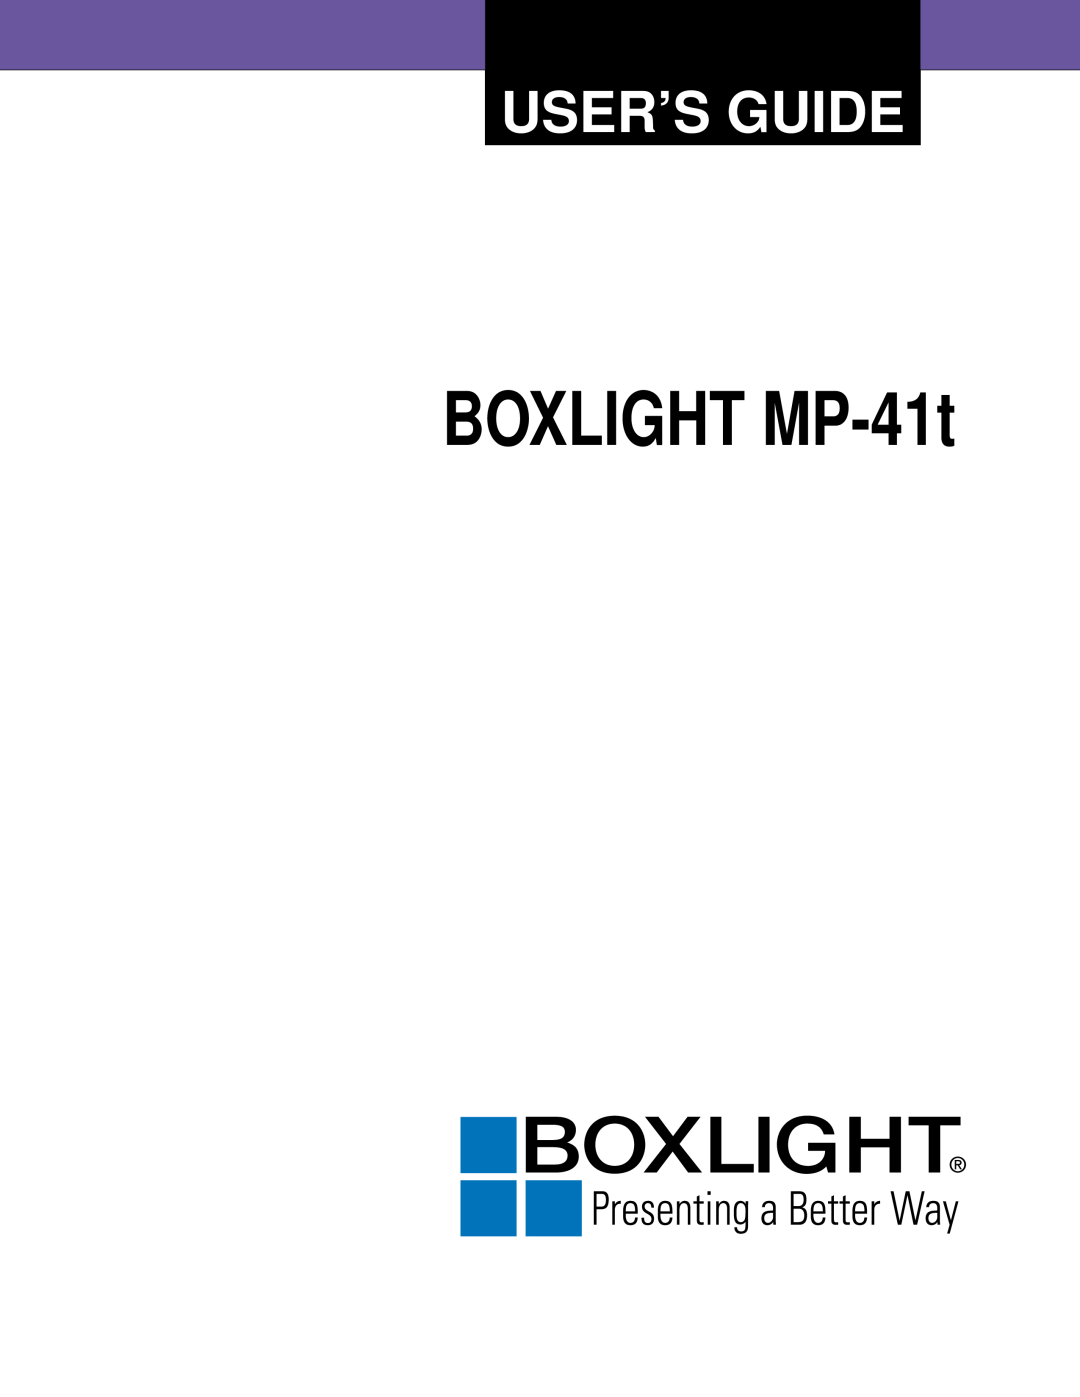 BOXLIGHT MP-41T manual BOXLIGHT MP-41t, User’S Guide 